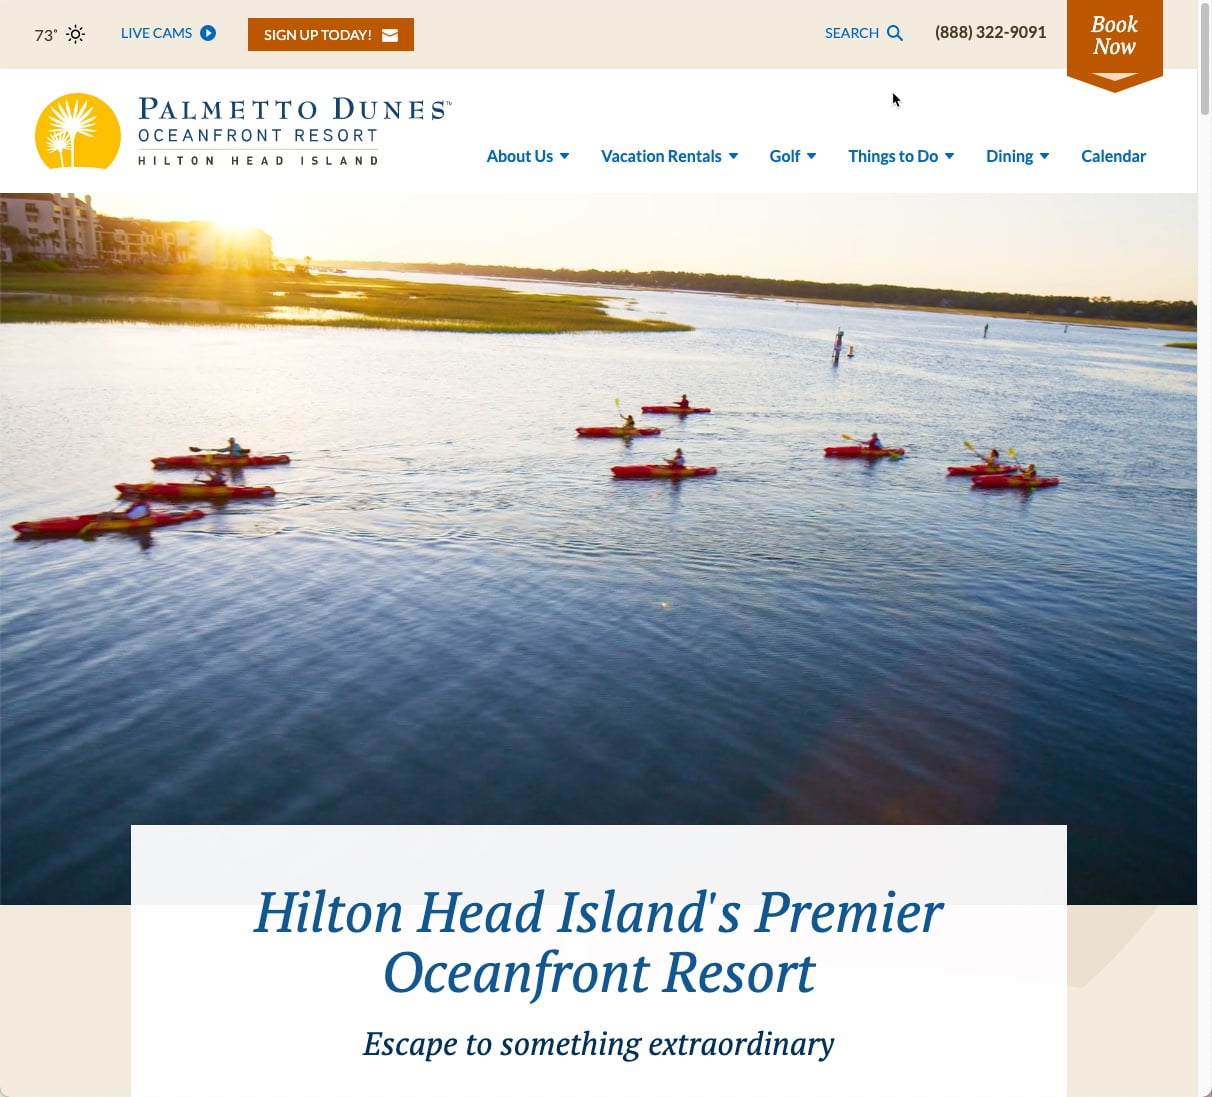 Palmetto Dunes Oceanfront Resort